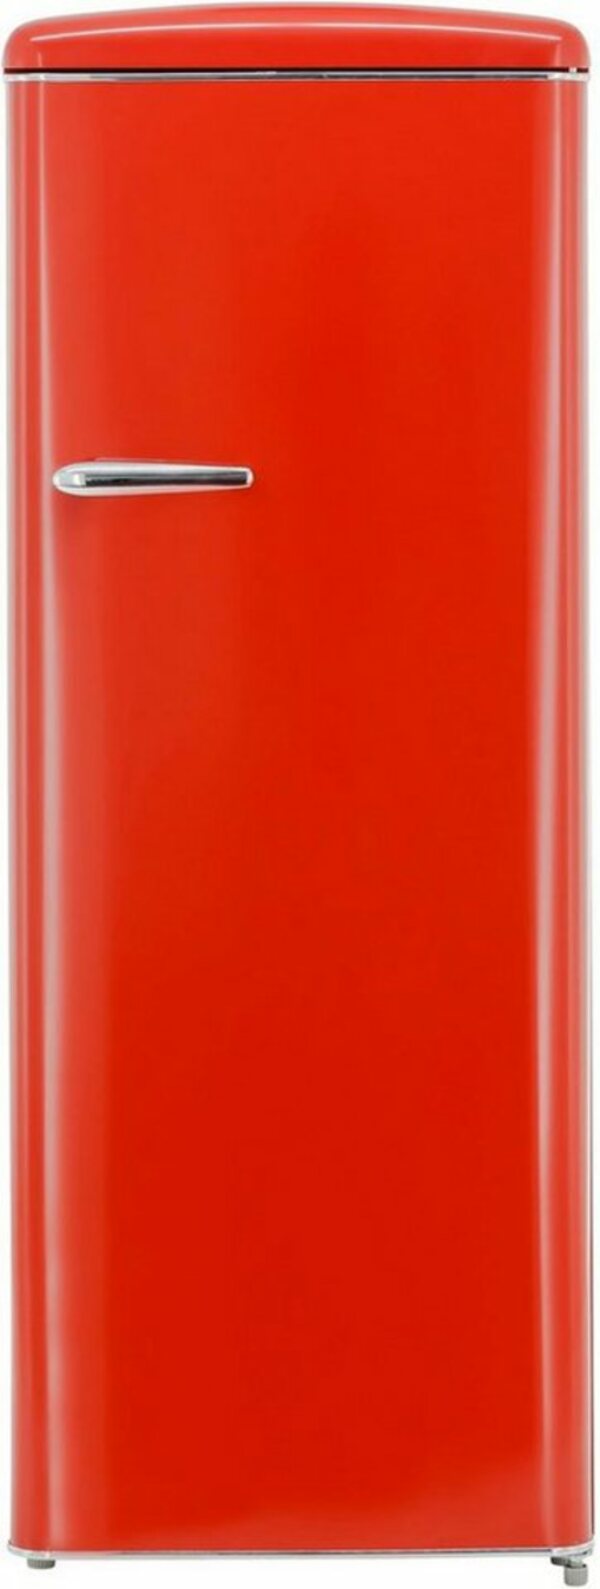 Bild 1 von exquisit Kühlschrank RKS325-V-H-160F rot, 144 cm hoch, 55 cm breit